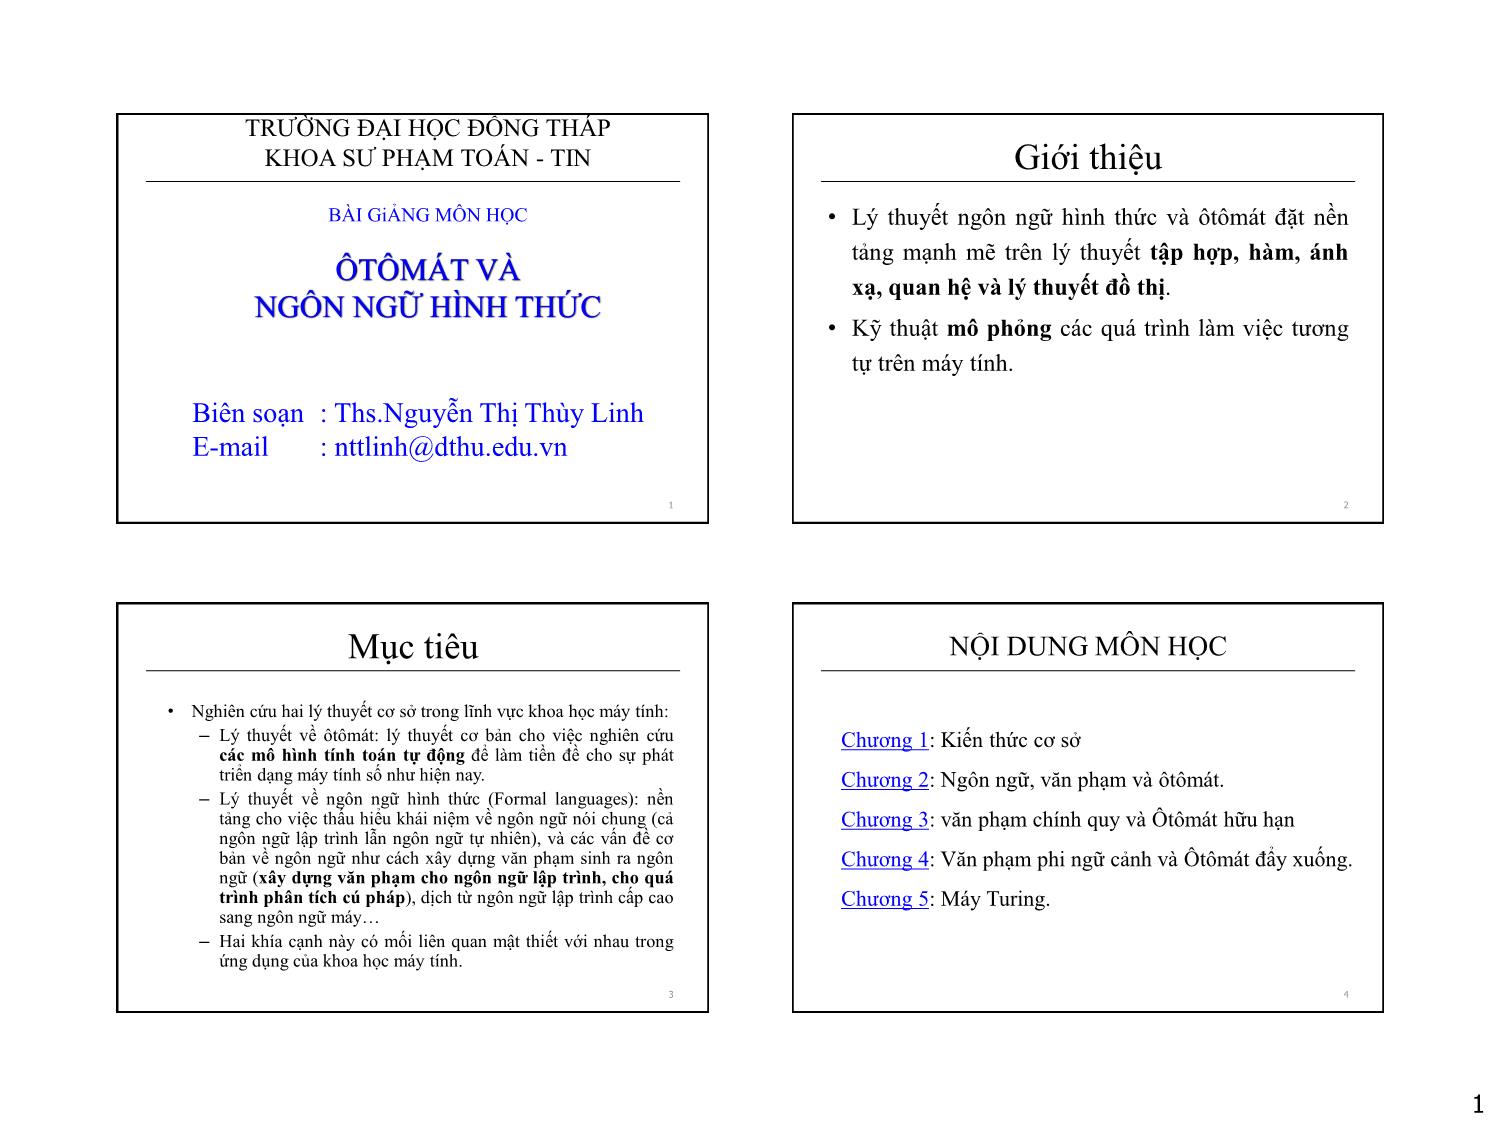 Bài giảng Ôtômát và ngôn ngữ hình thức - Chương 1: Kiến thức cơ sở - Nguyễn Thị Thùy Linh trang 1